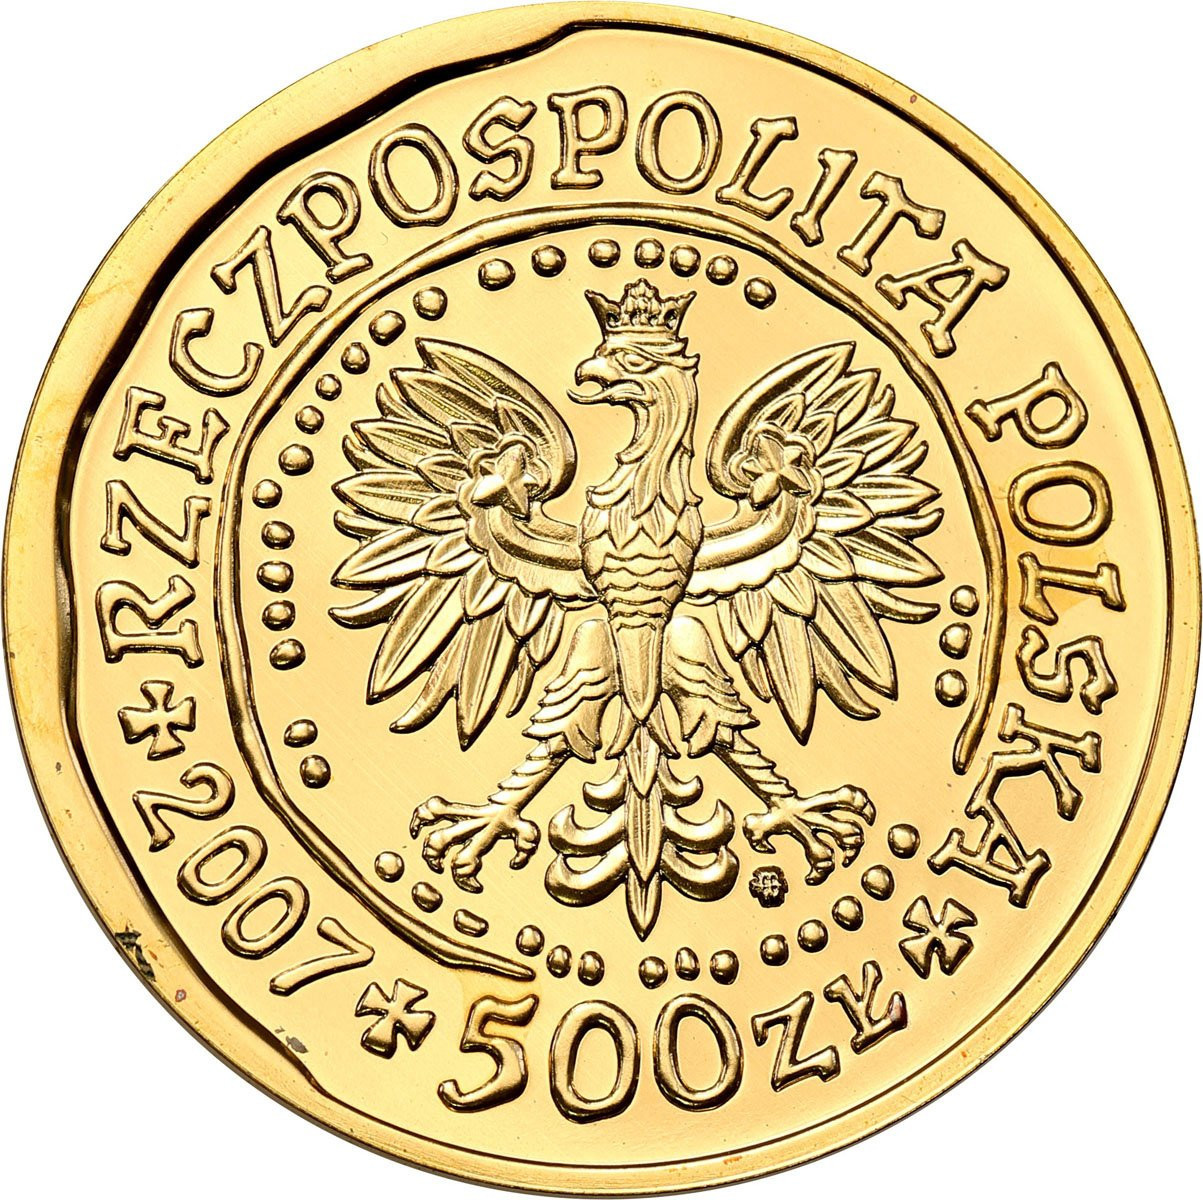 Polska. 500 złotych 2007 Orzeł Bielik – UNCJA ZŁOTA